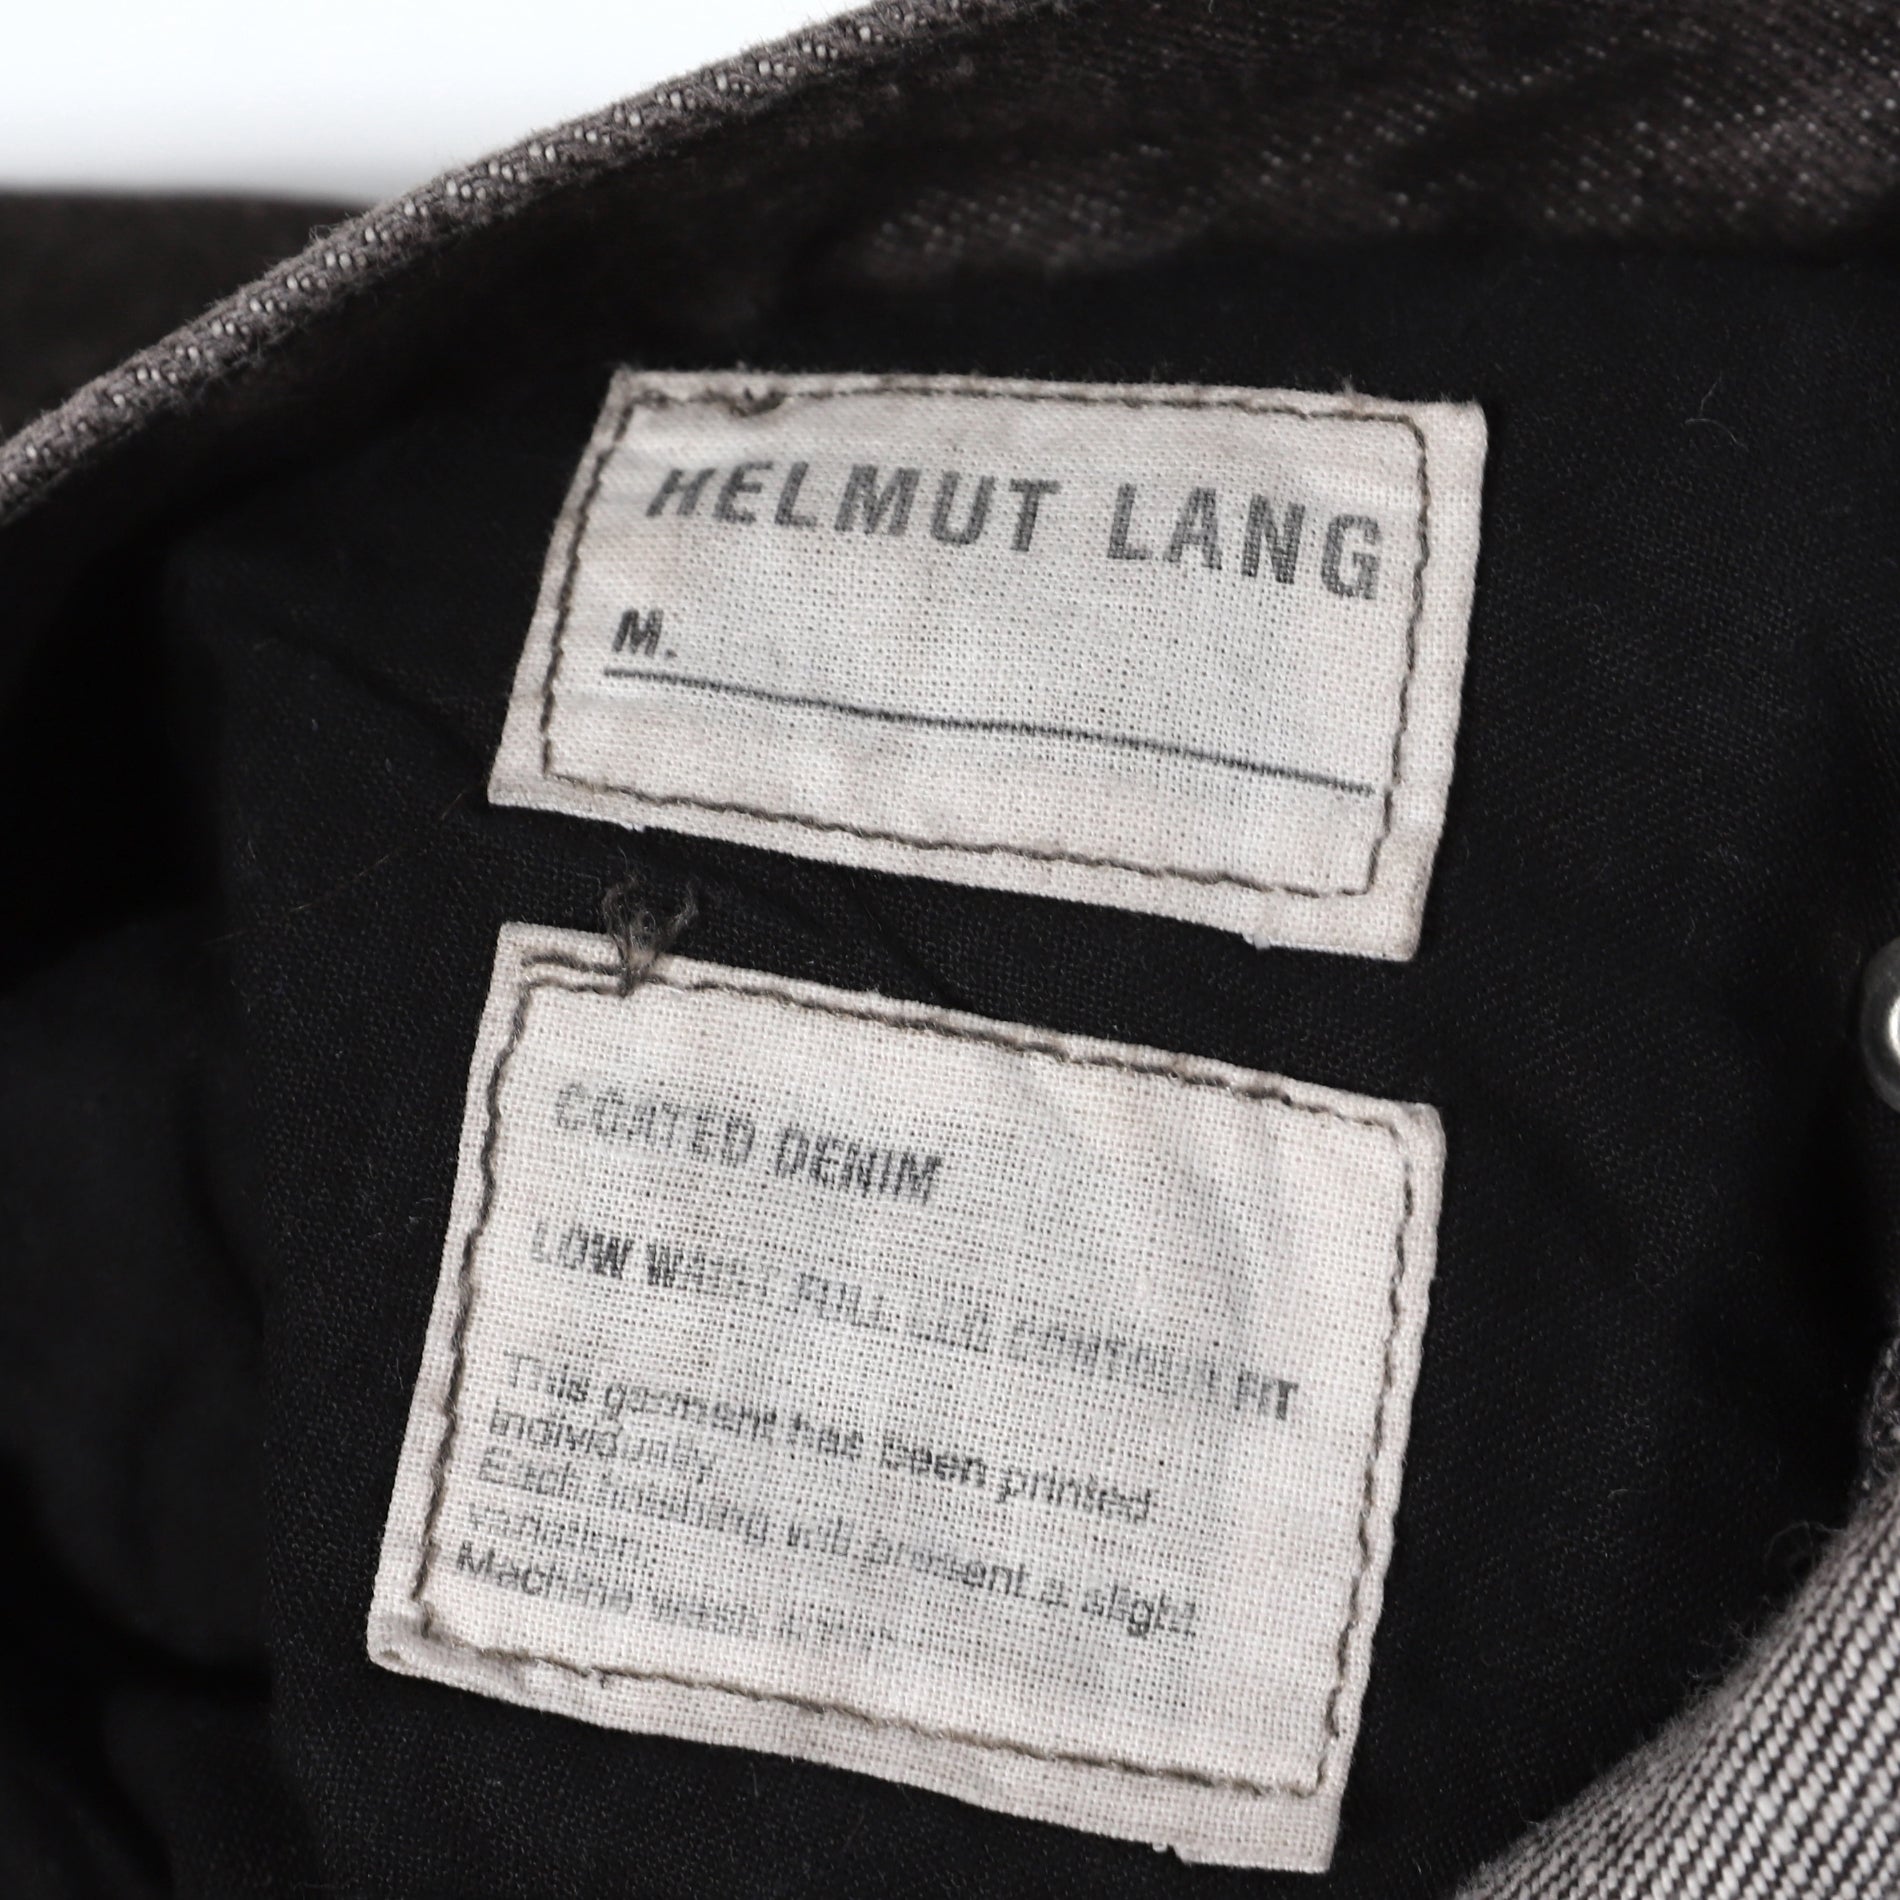 Helmut Lang Archival Washed Black Denim